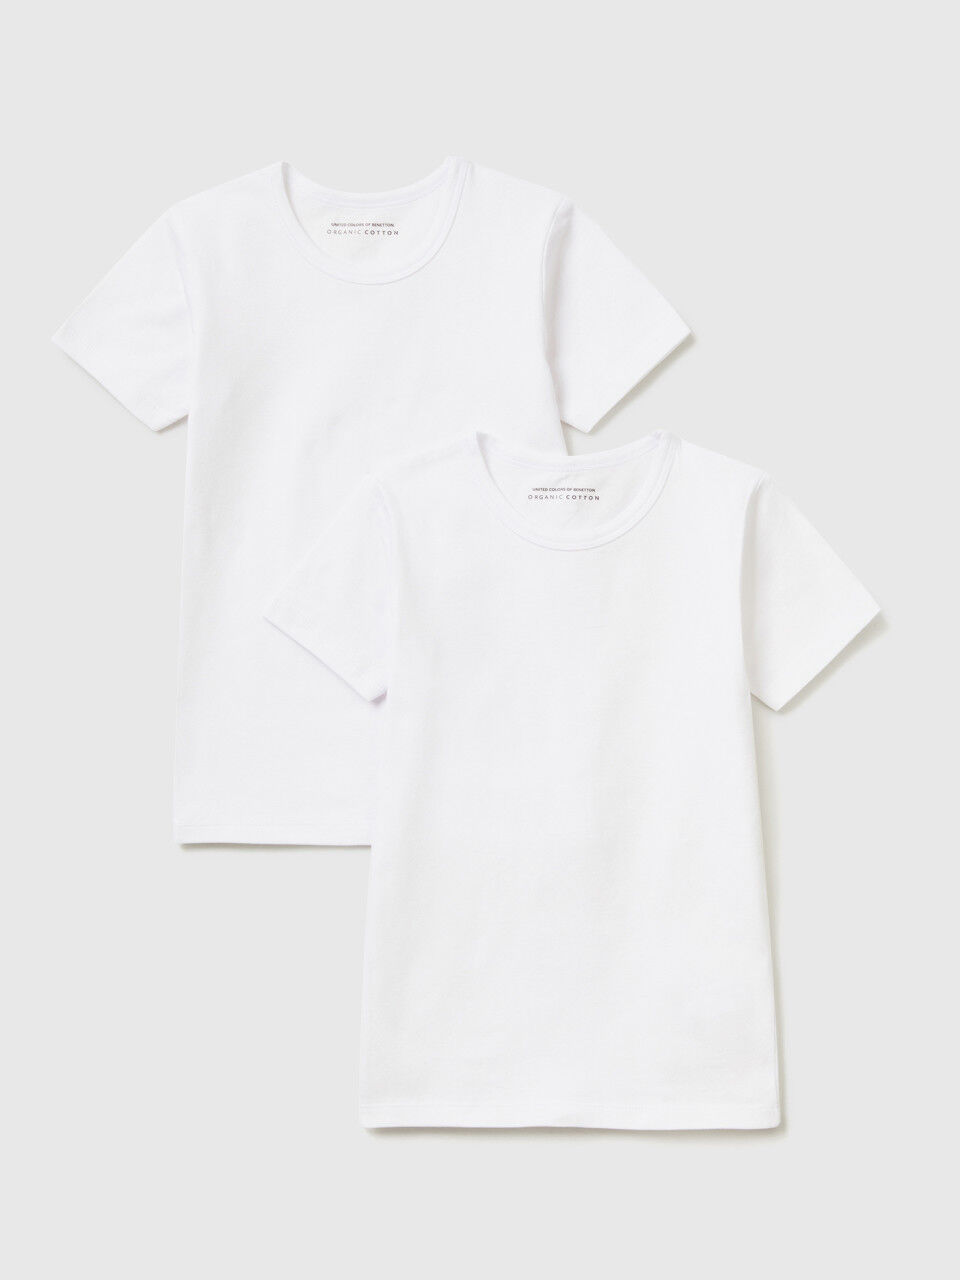 Δύο t-shirts λευκά από οργανικό βαμβακερό στρετς